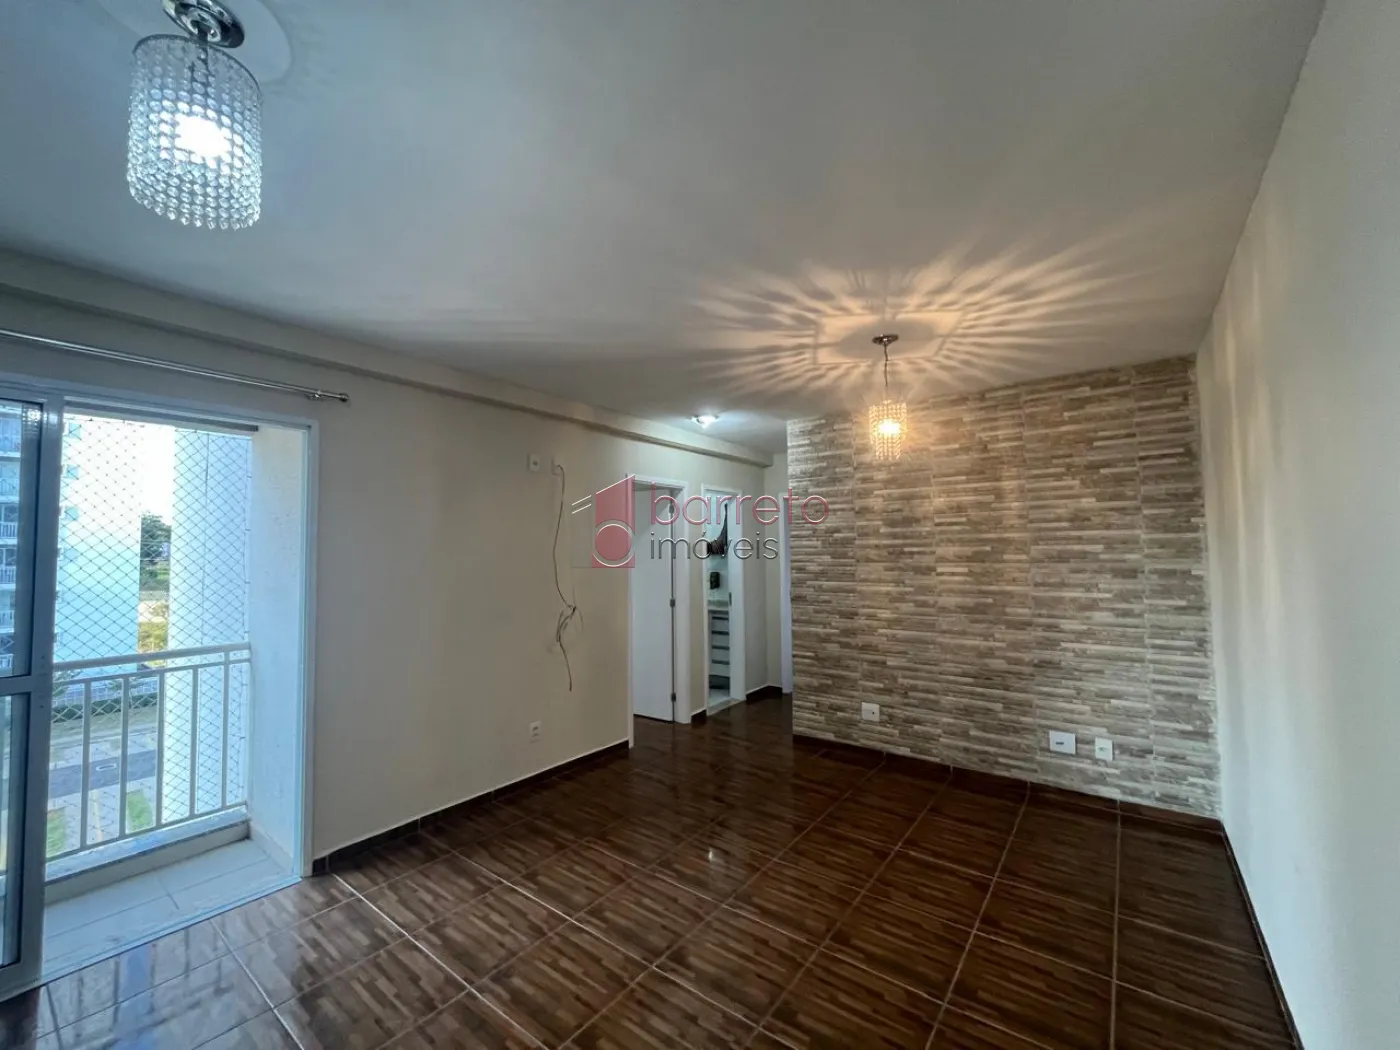 Alugar Apartamento / Padrão em Jundiaí R$ 2.200,00 - Foto 1